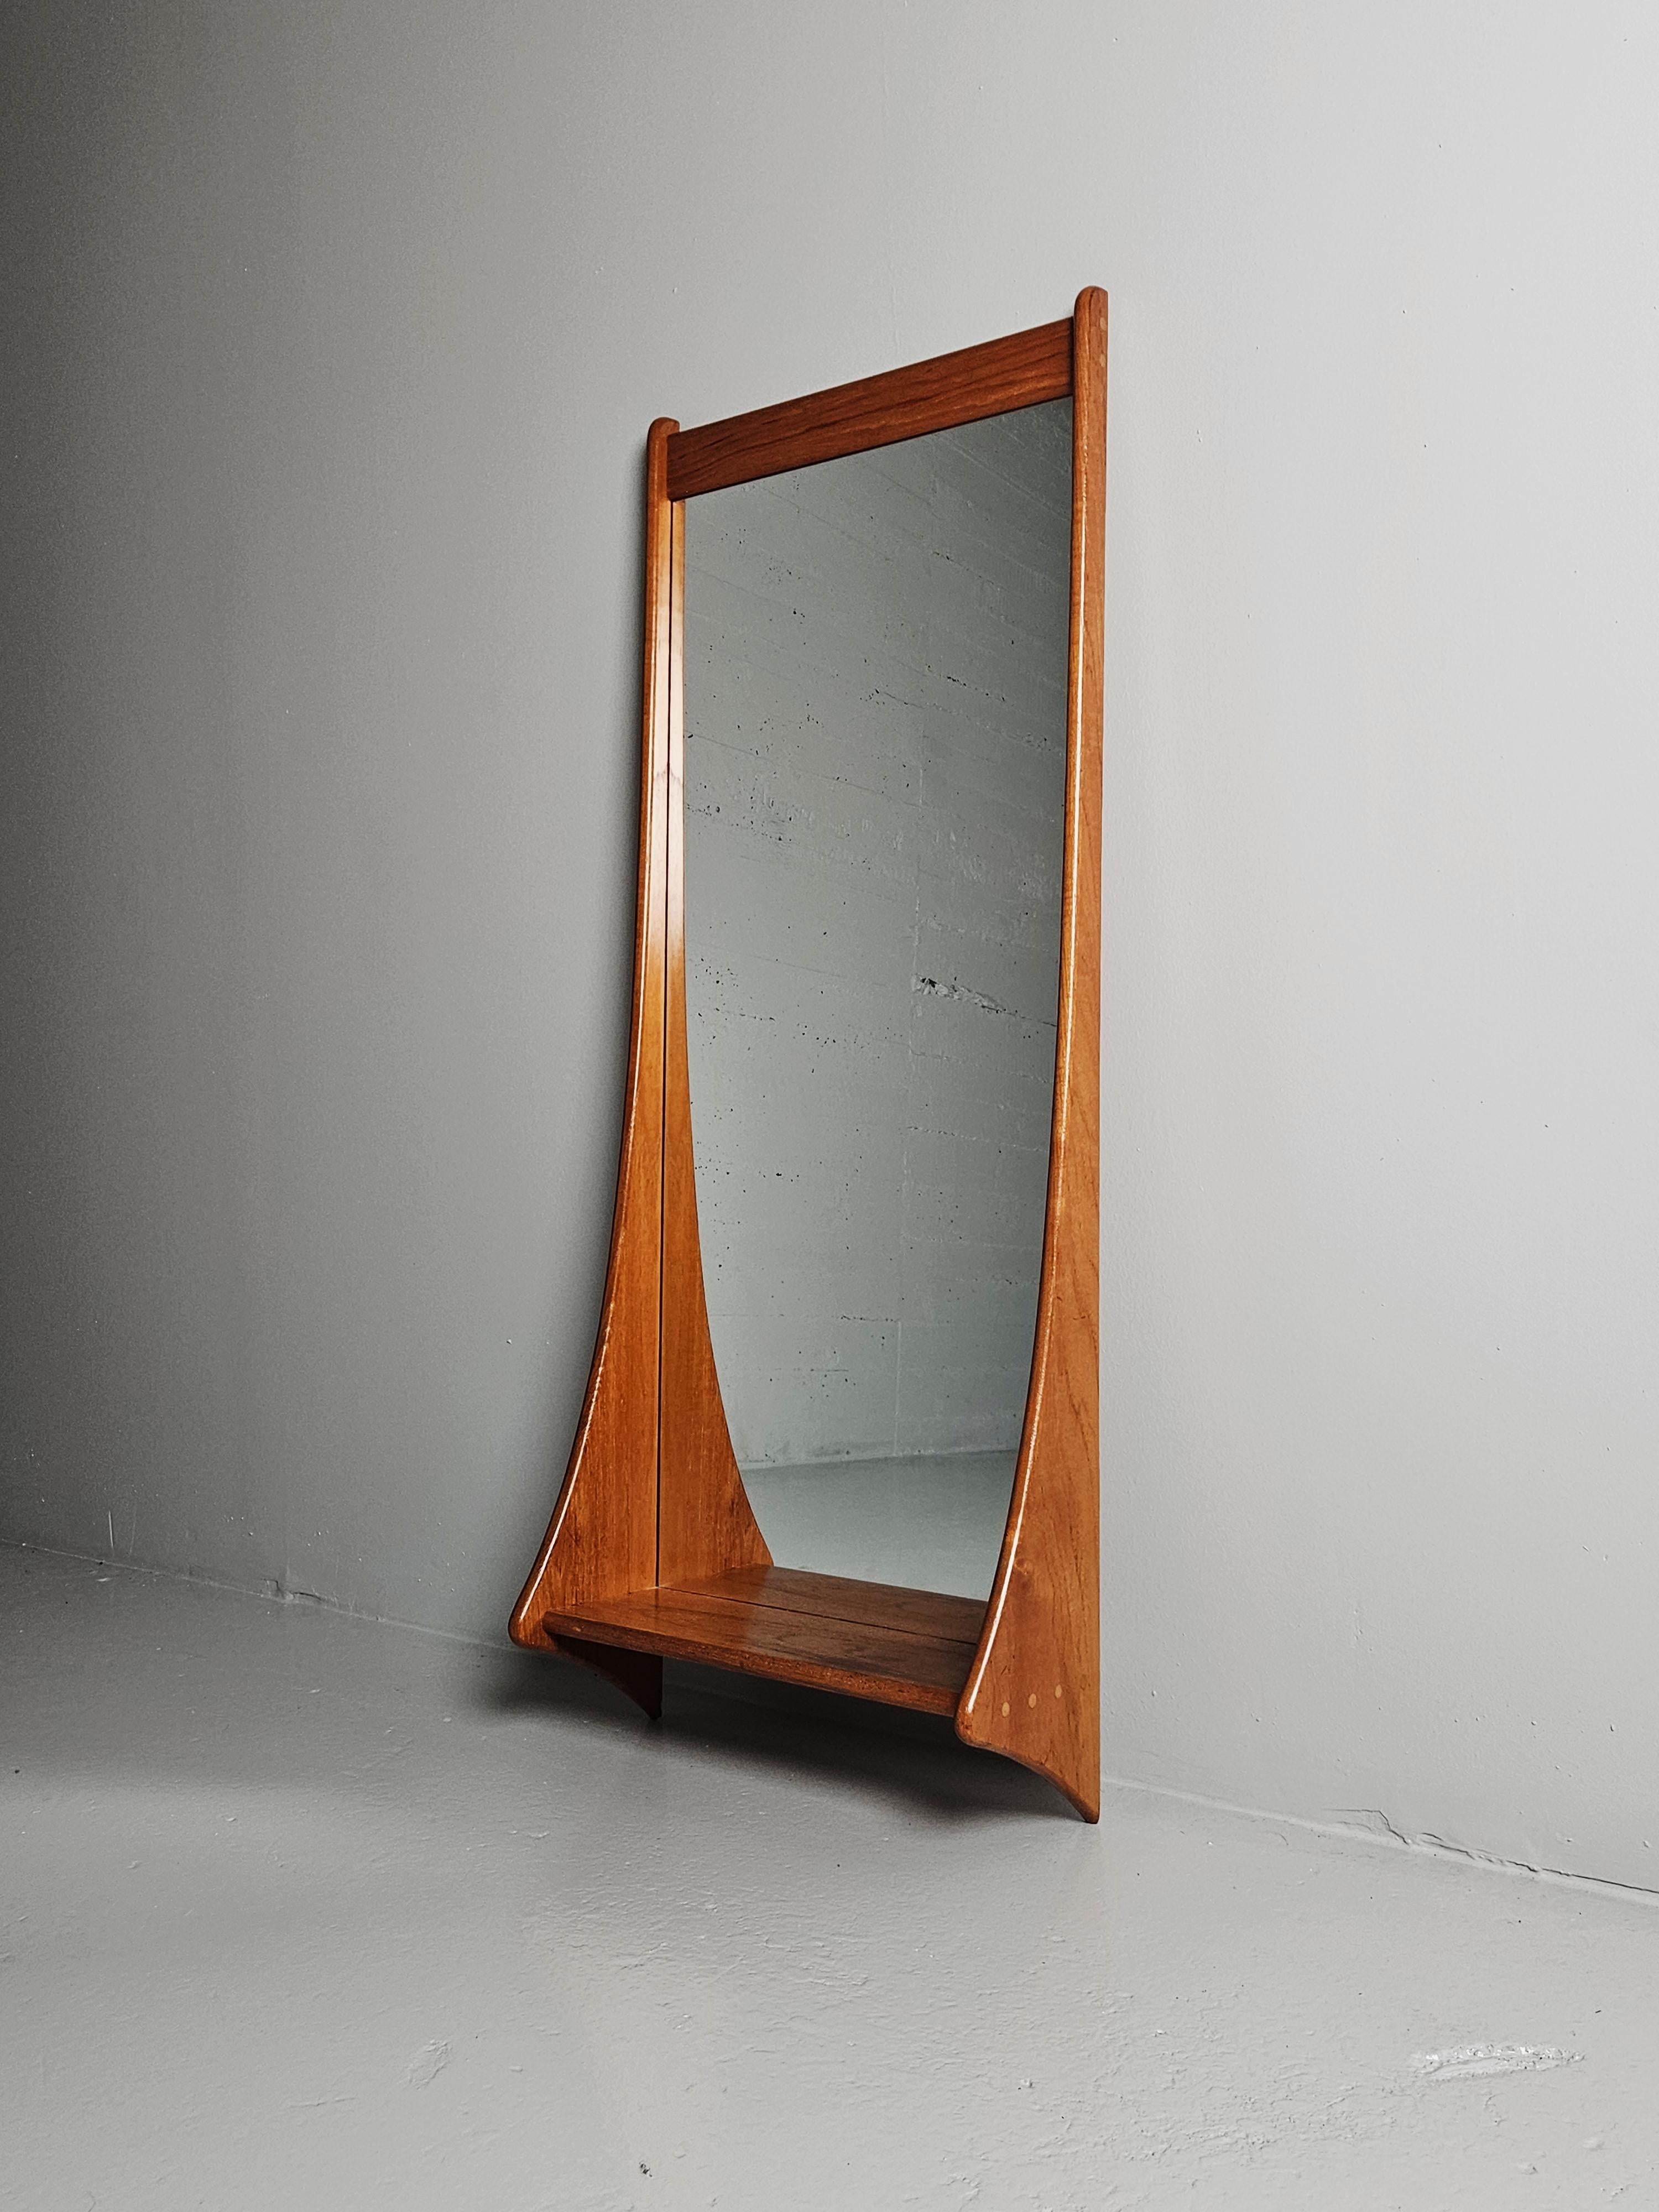 Magnifique miroir d'un designer inconnu, fabriqué au Danemark dans les années 1960. 

Fabriqué en teck massif avec une étagère à chevilles décoratives. 